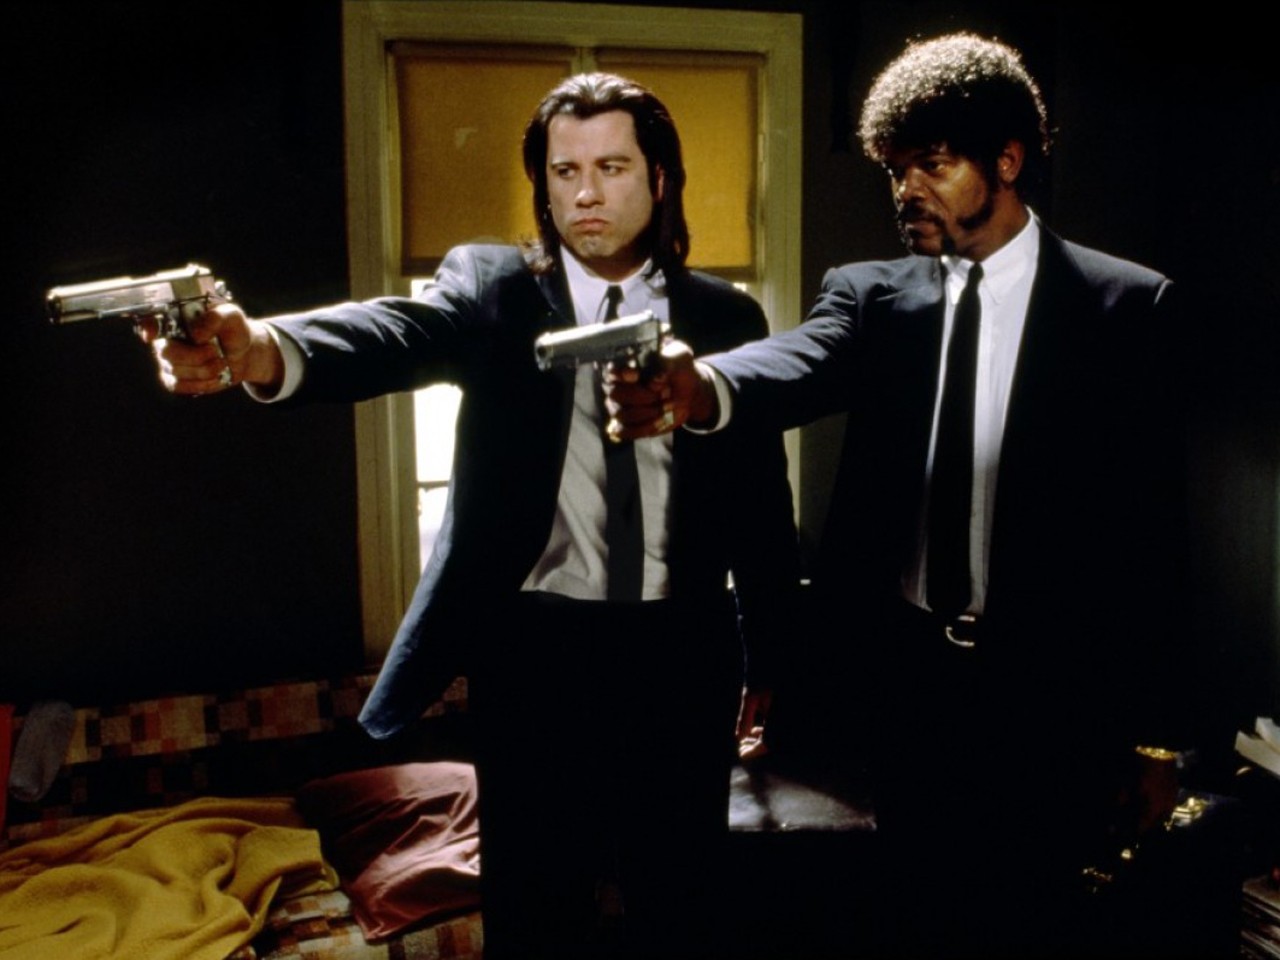 John Travolta e Samuel L. Jackson em cena de 'Pulp Fiction' (Foto: Divulgação)